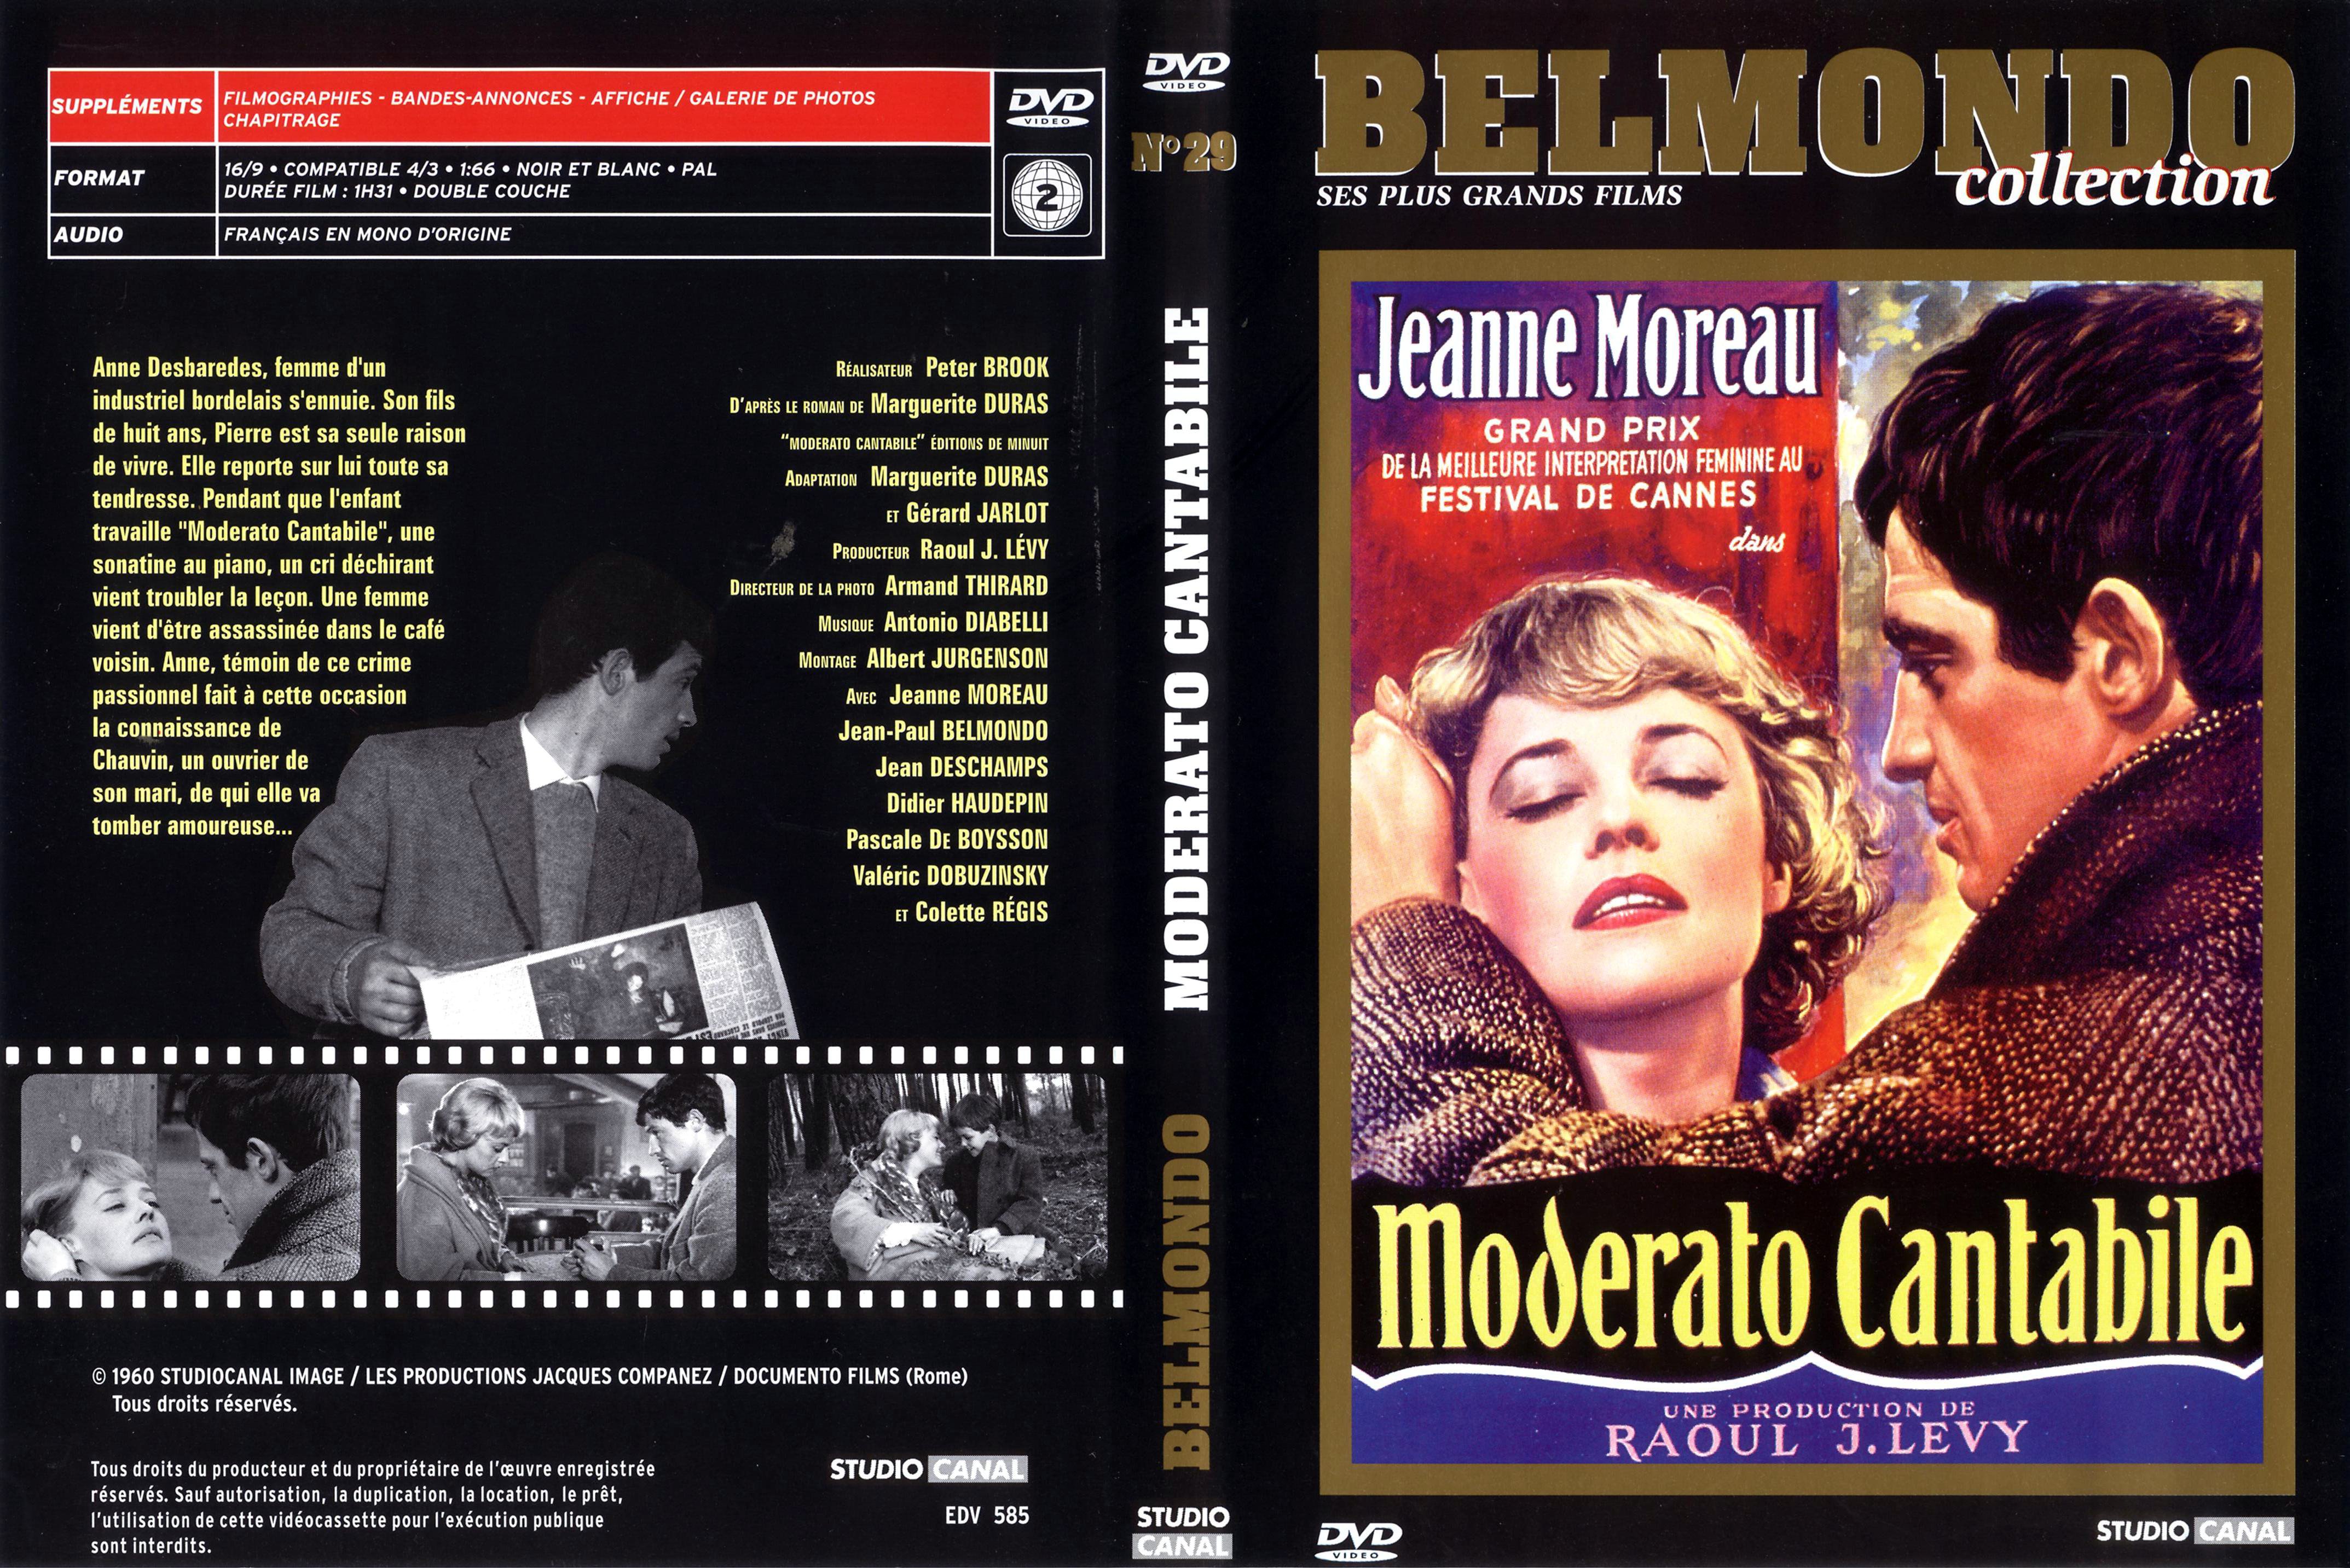 Jaquette DVD Moderato cantabile v2